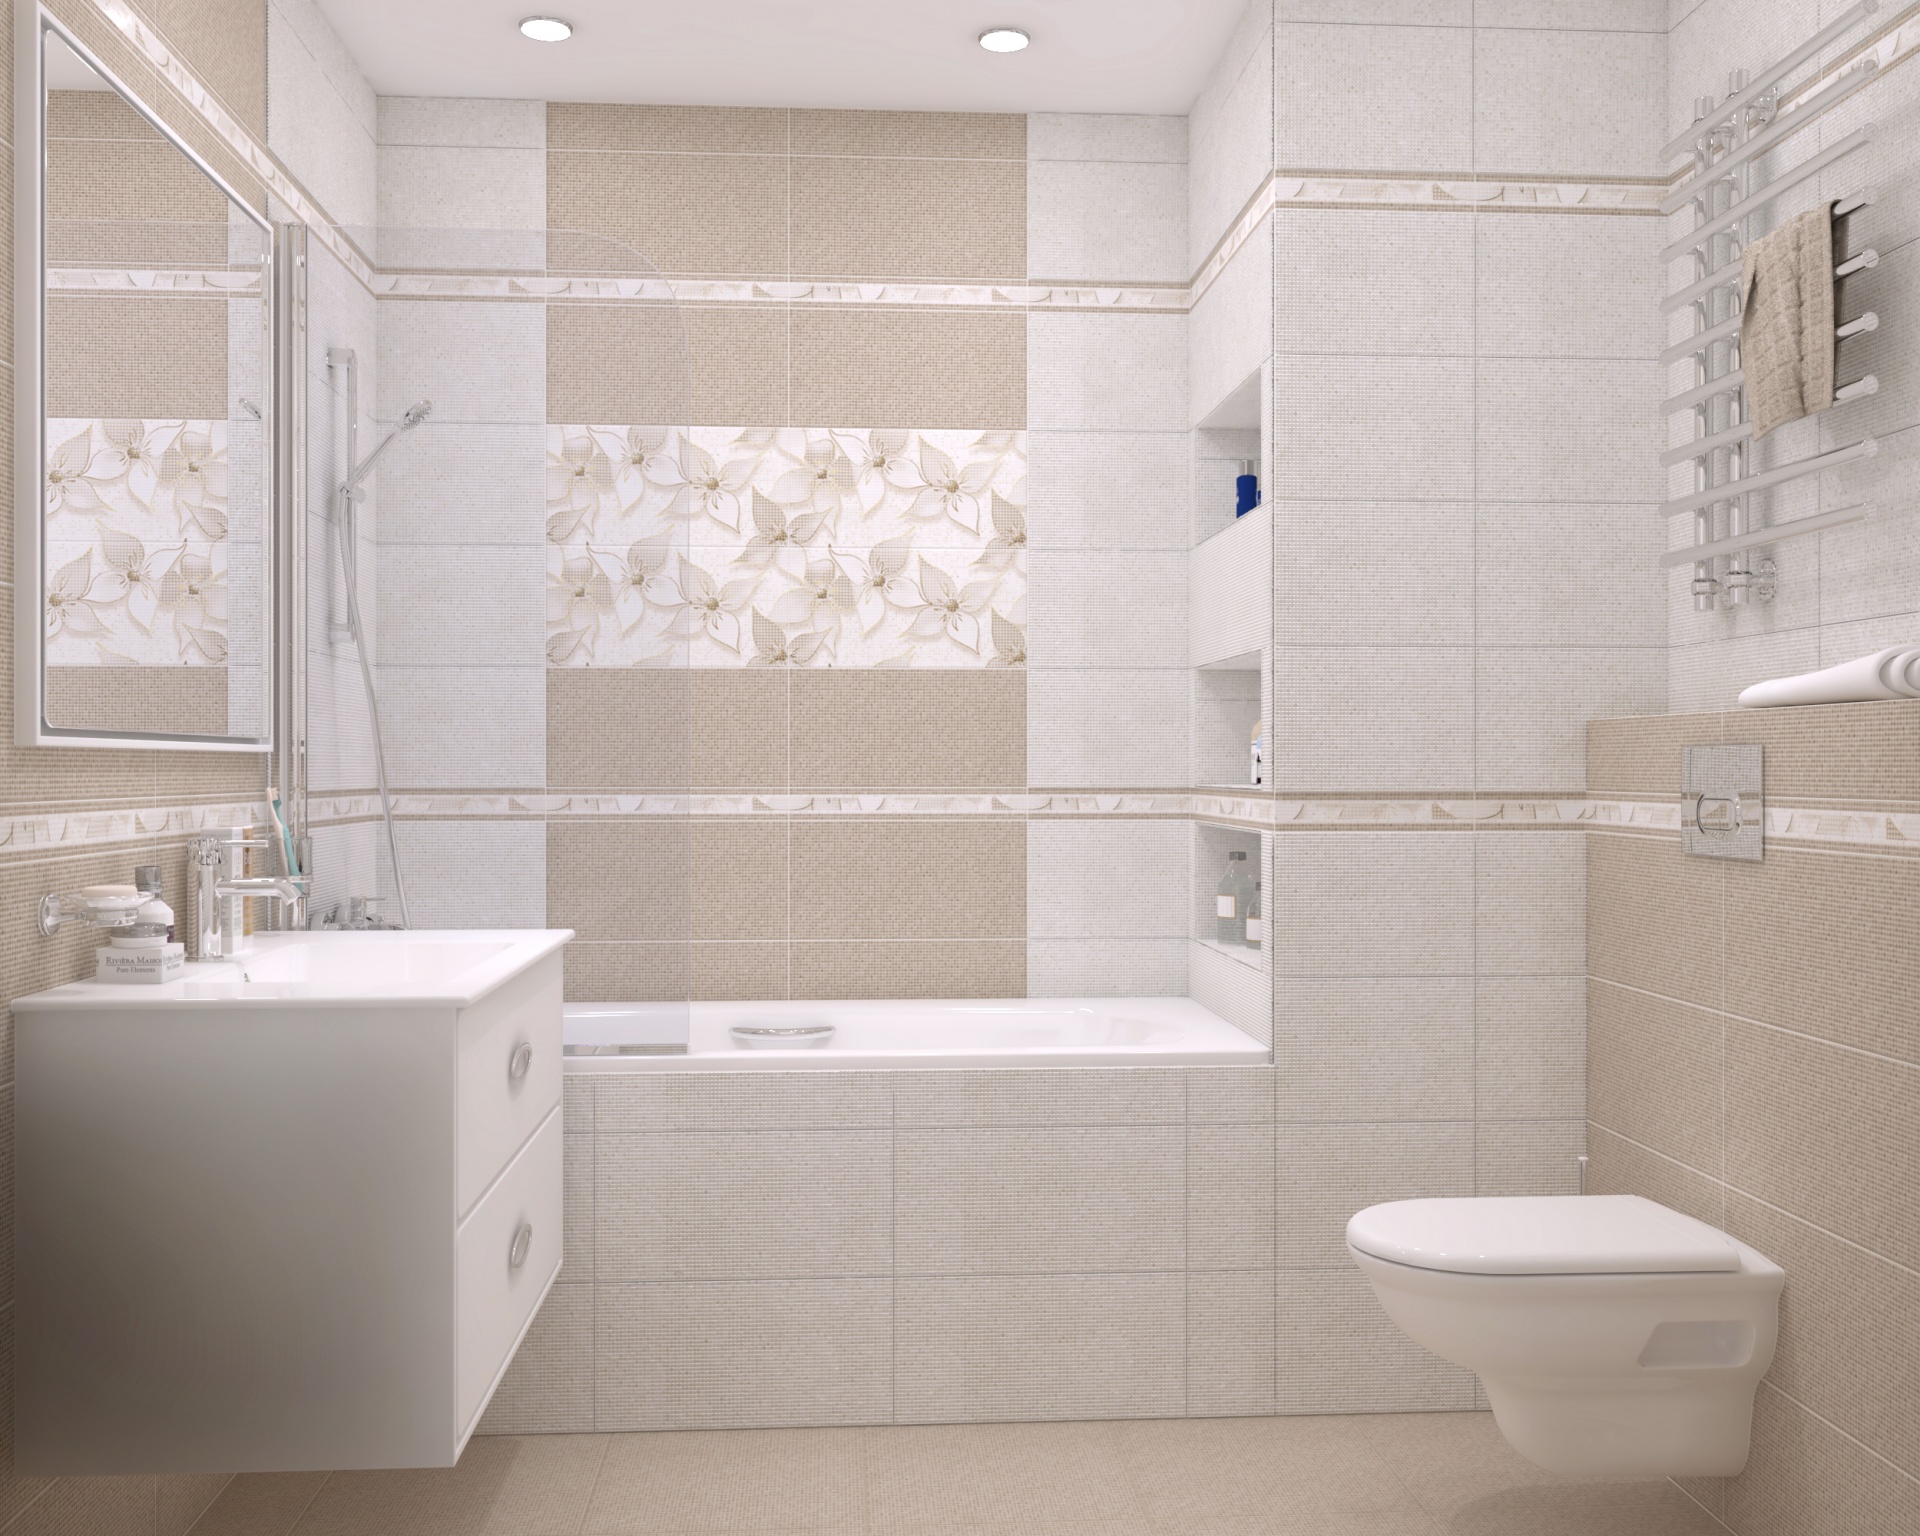 красивый дизайн плитки в ванной комнате фото